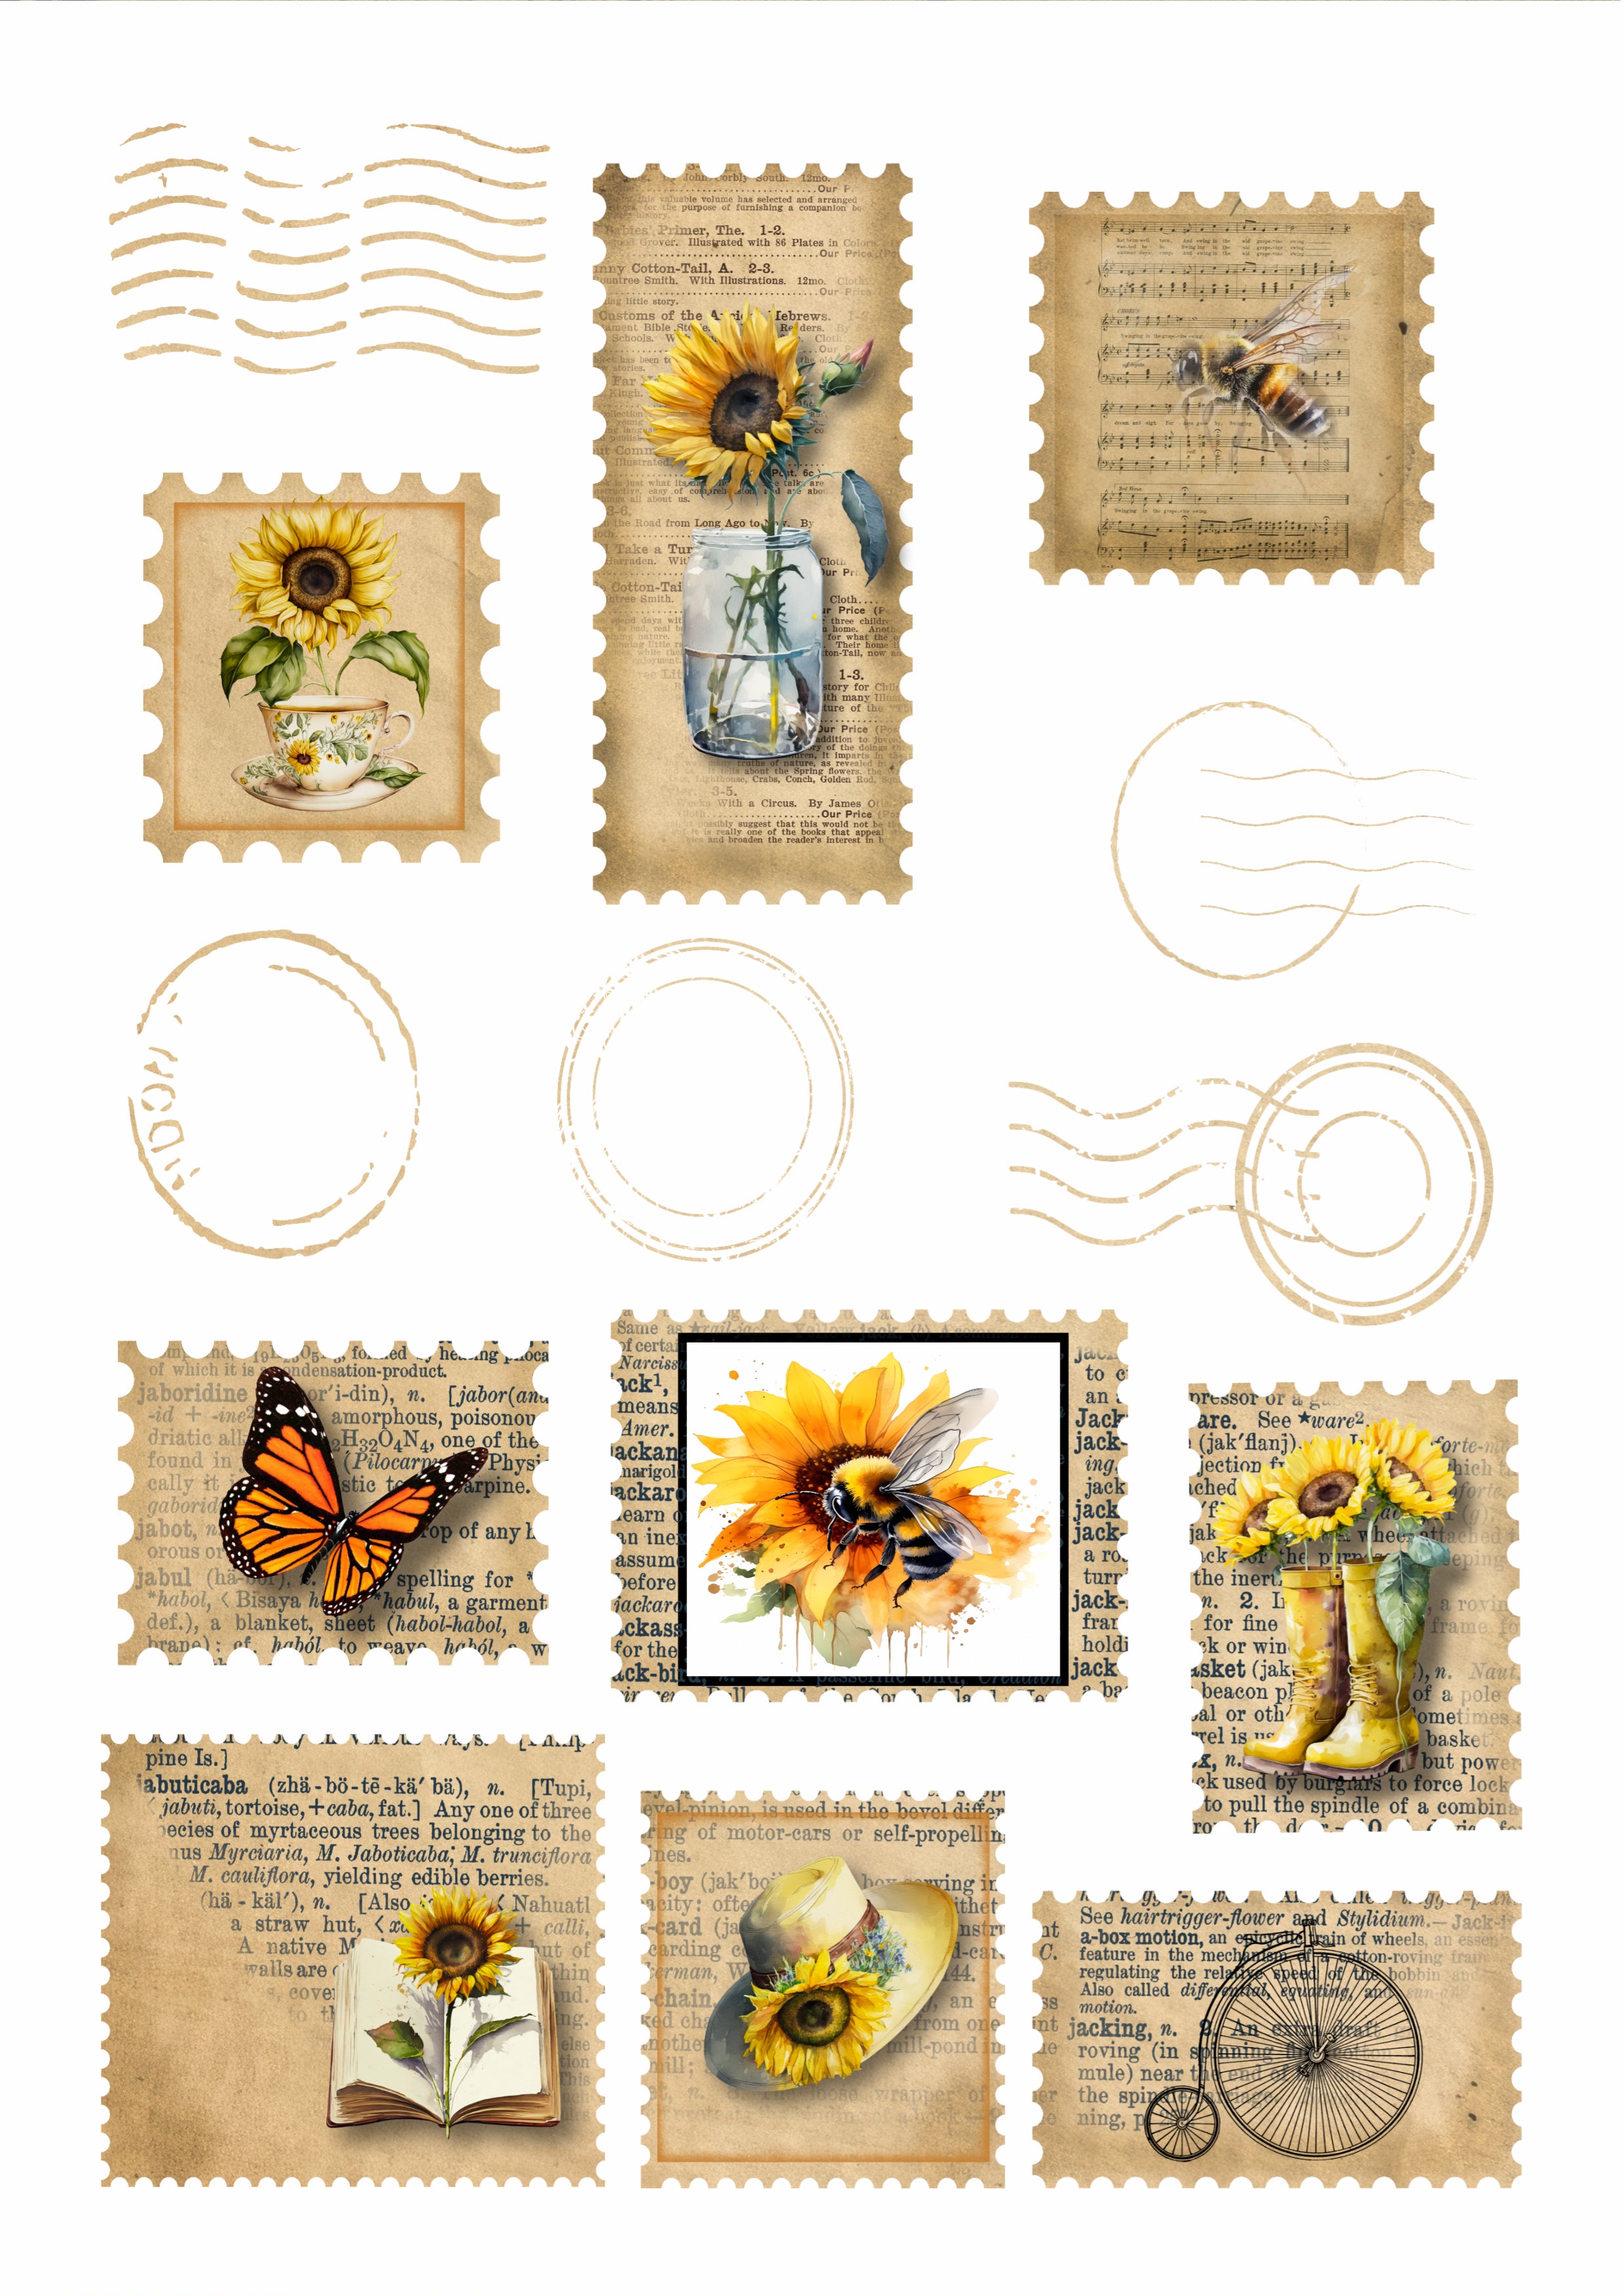 Vintage Floral Stamps, Vintage Floral Stamp Art Print, Vintage Stamp Art,  Stamp Print, Stamp Poster, Vintage Stamp Collection, Floral Stamp 